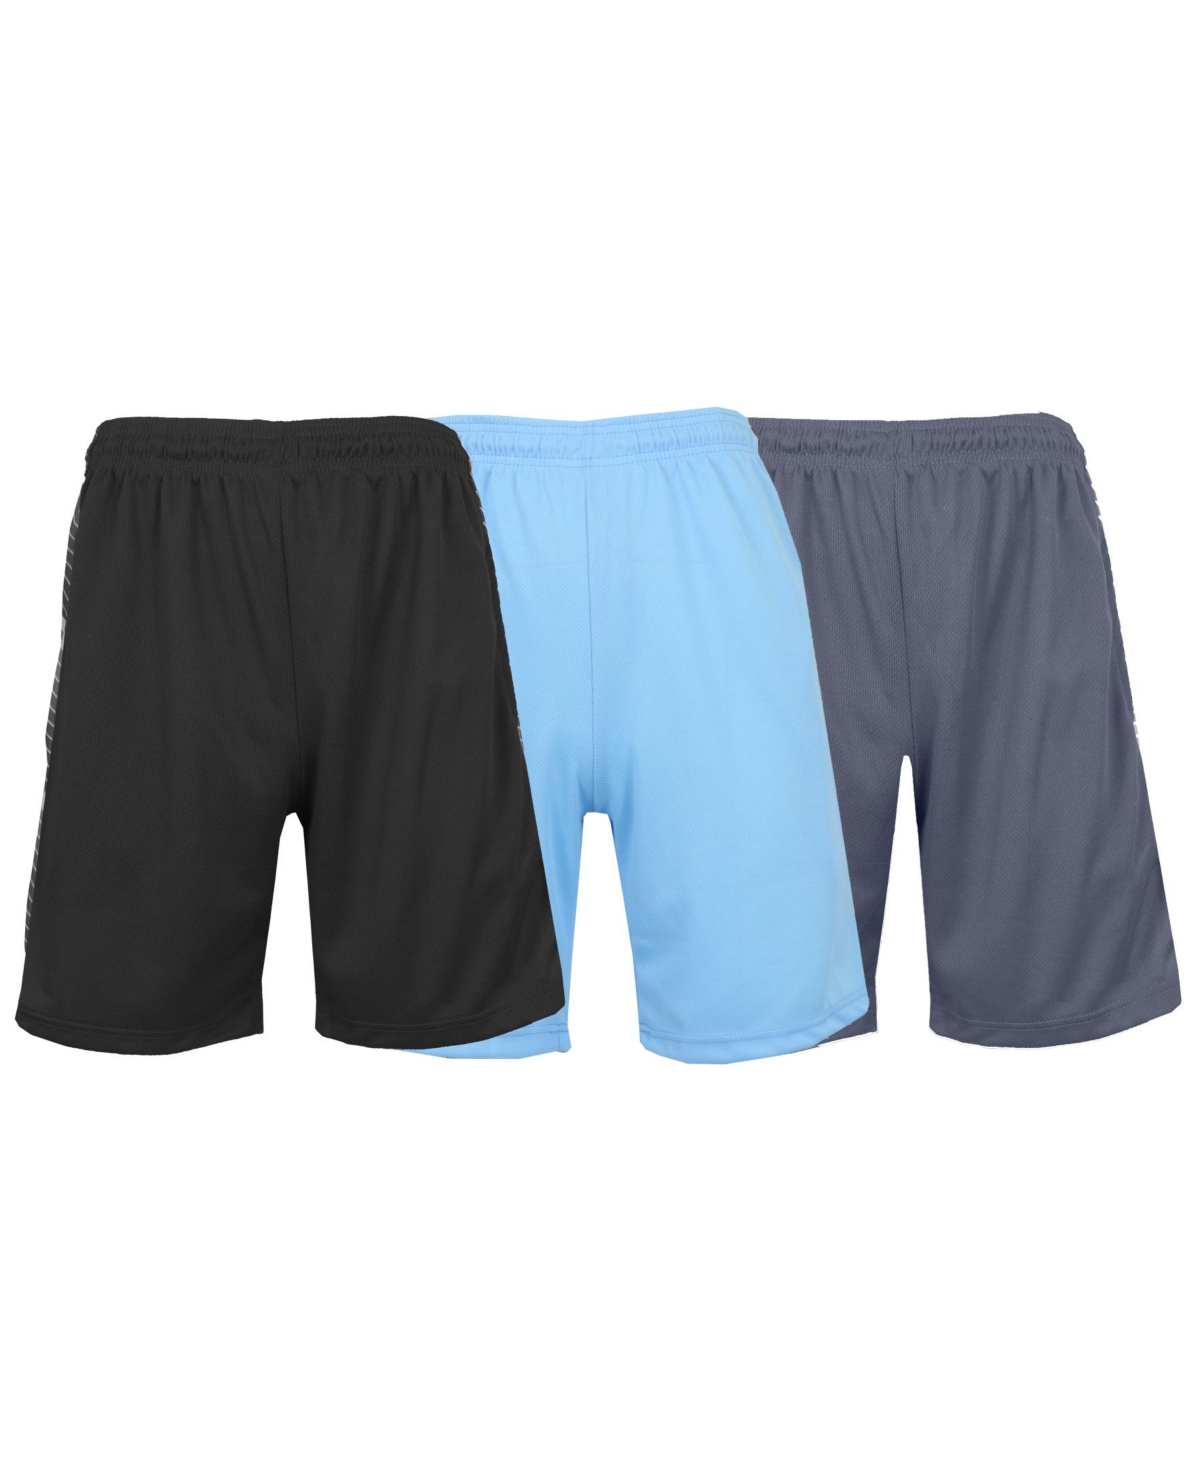 Men's Moisture Wicking Performance Mesh Shorts, Pack of 3 - Navy, Light Blue, Royal